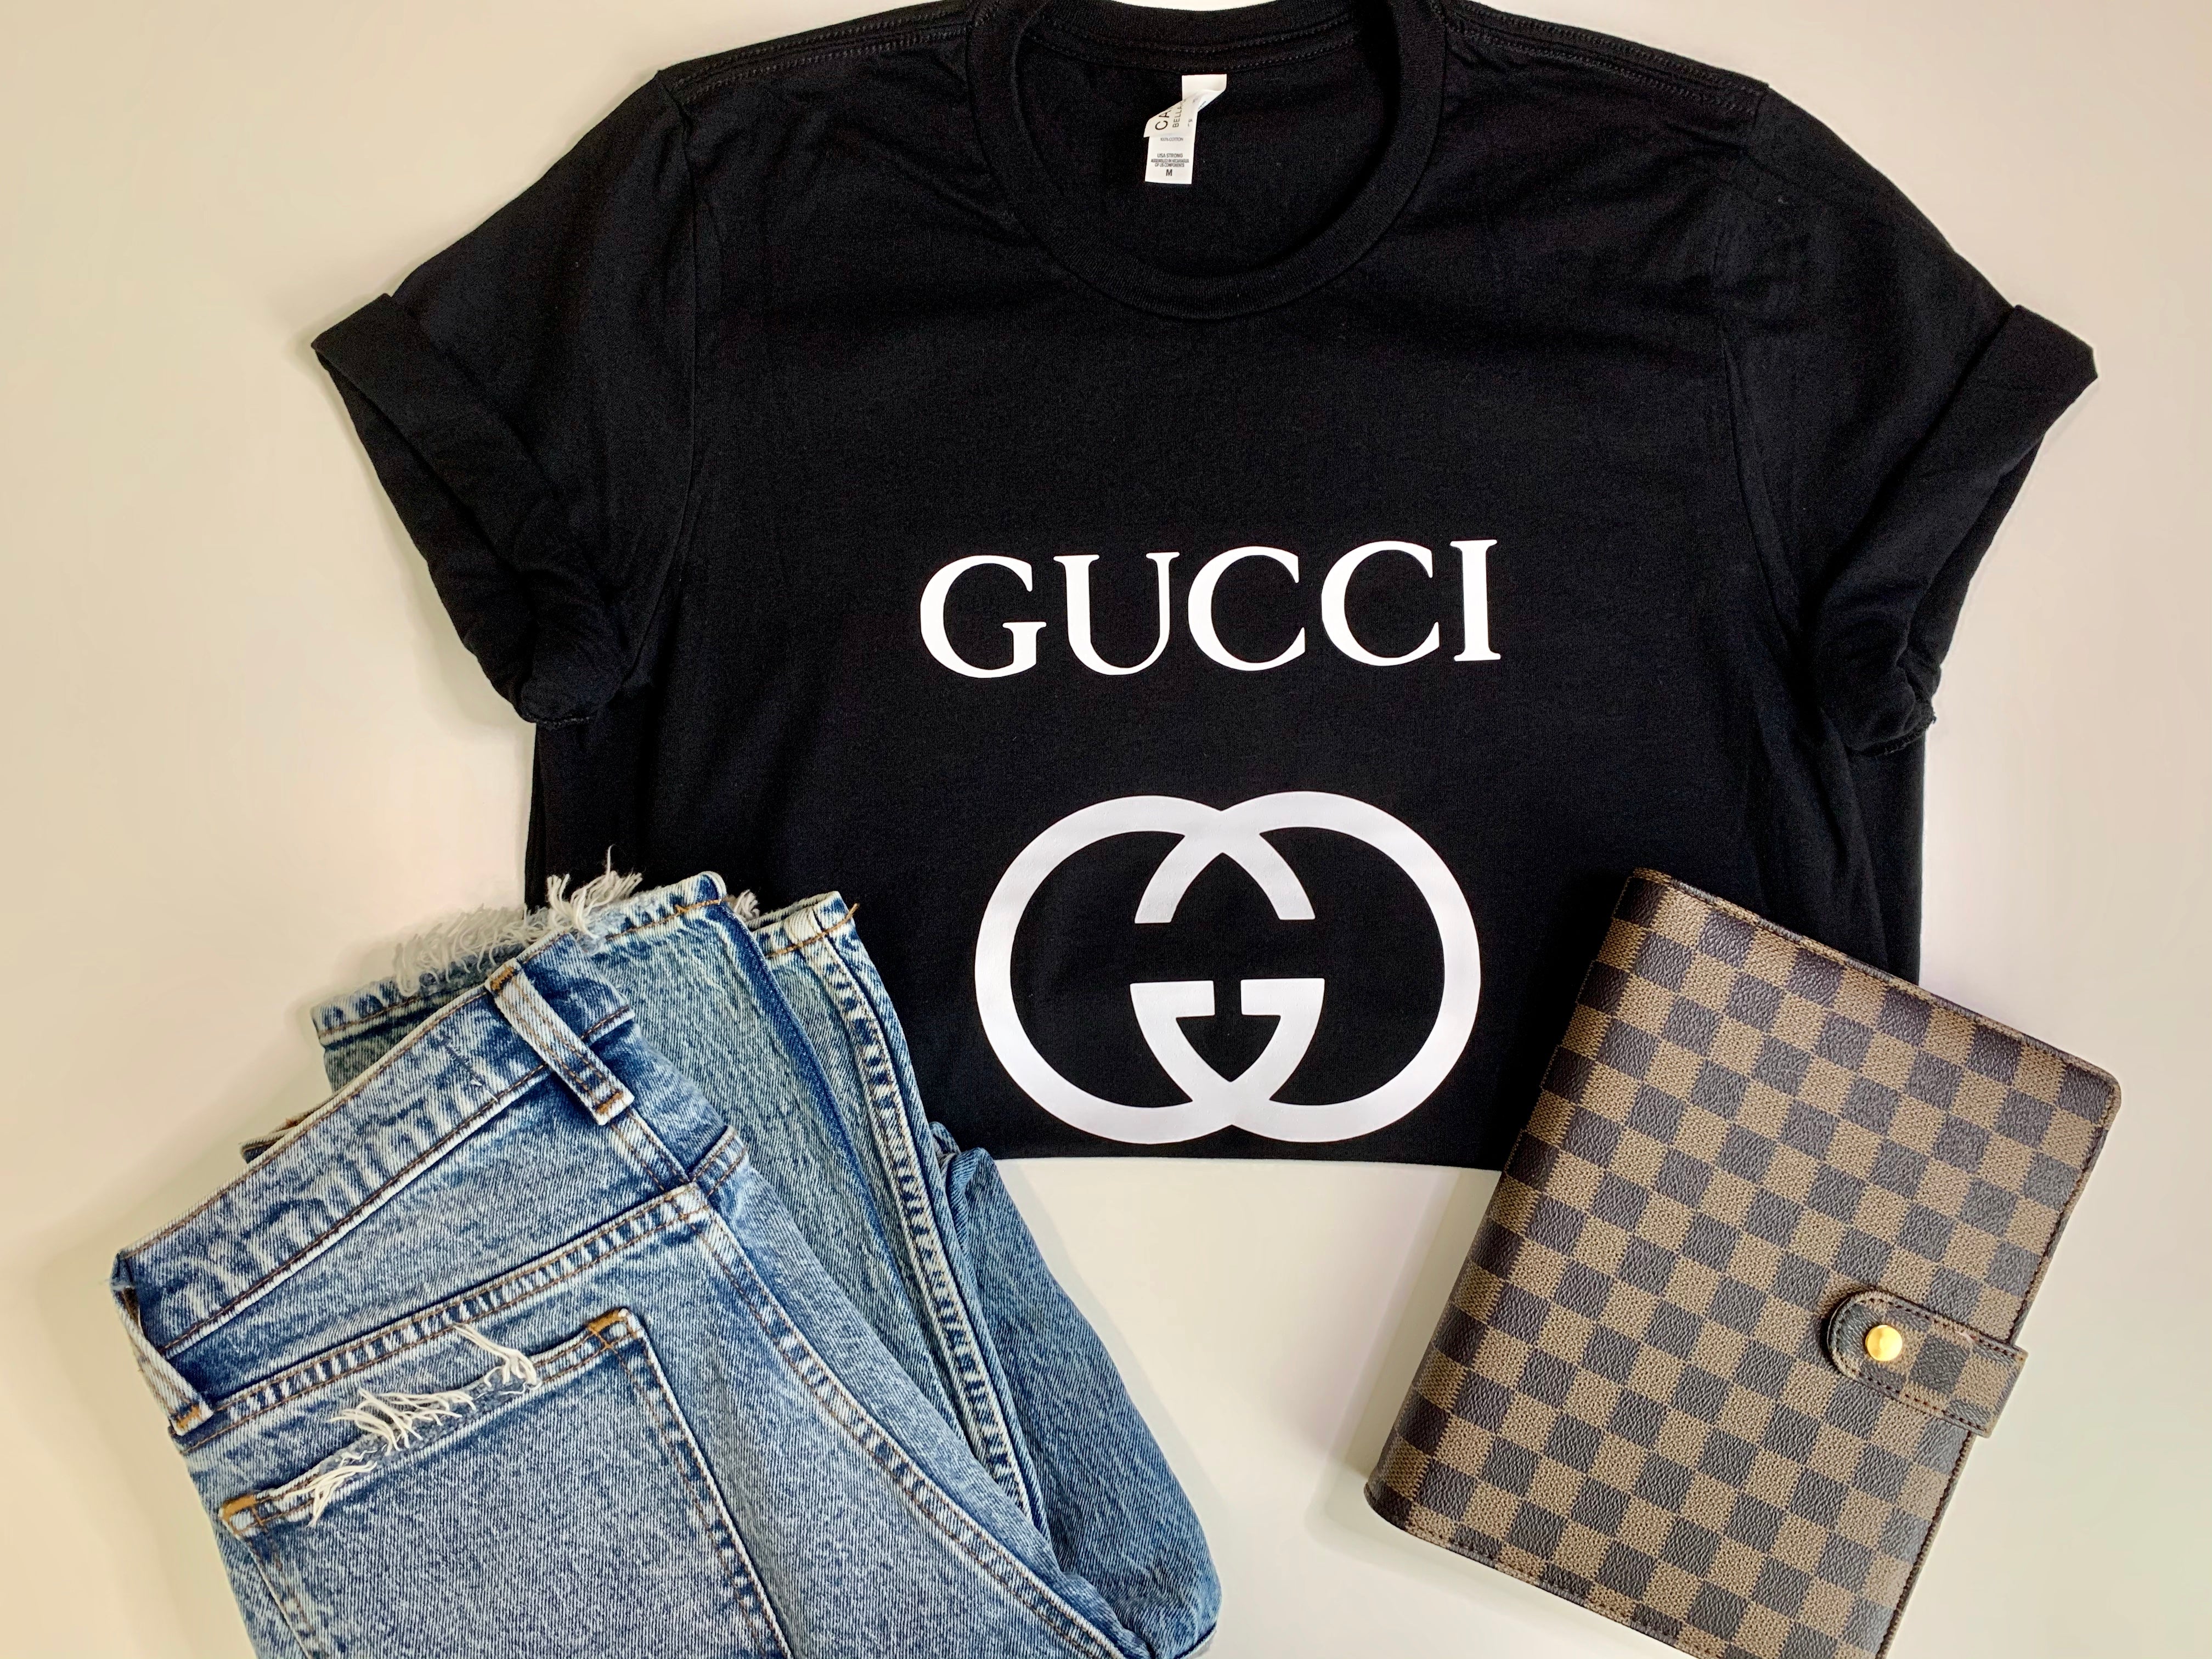 Gucci Dior Chanel Louis Vuitton Graphic T-Shirt - Mint Leafe Boutique Black / XL